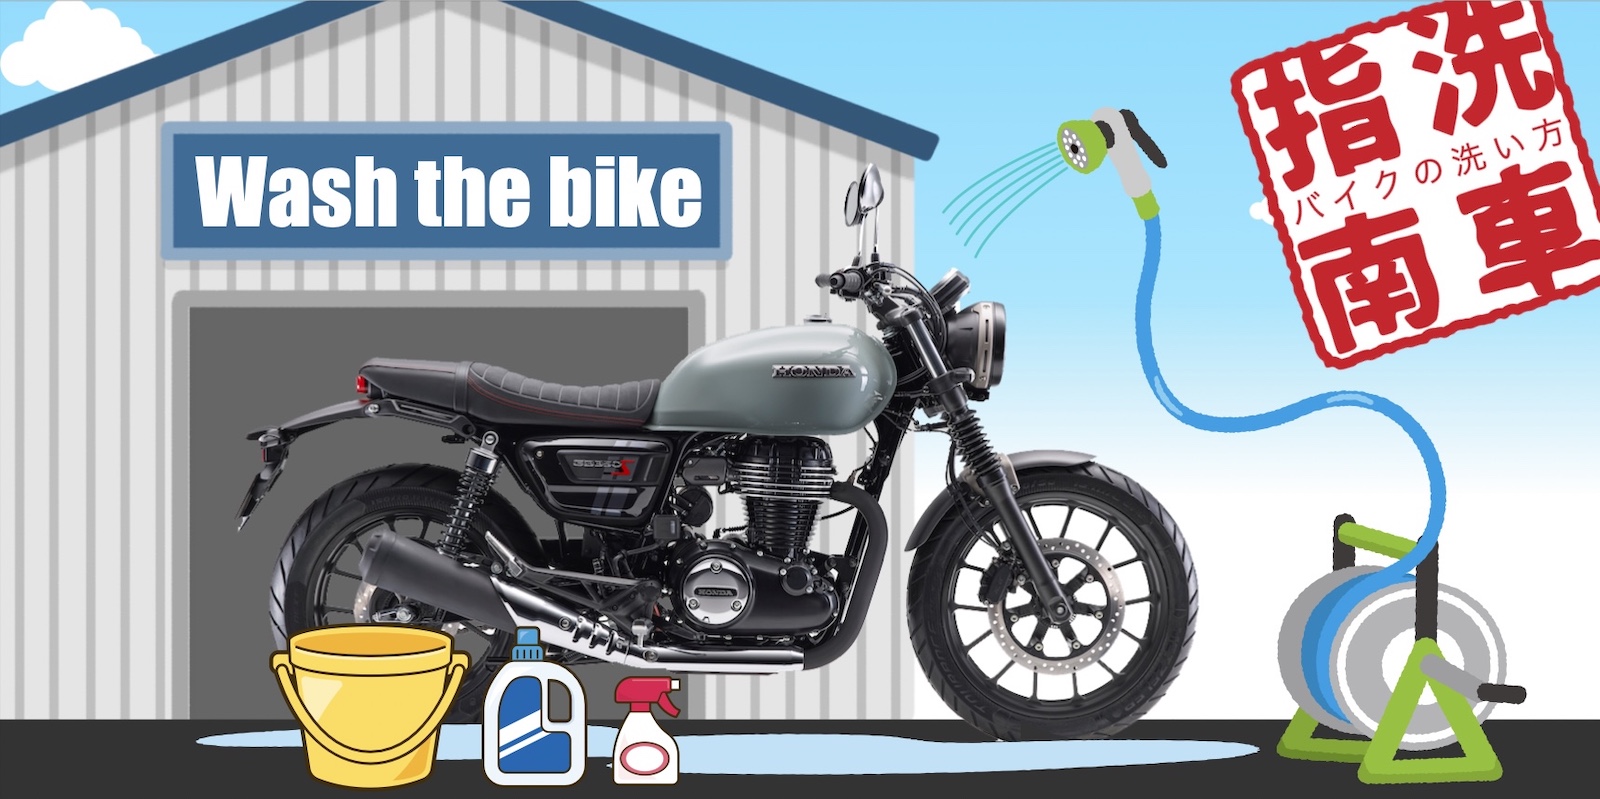 ホイールブラシ 車 バイク 洗車 奥まで洗える 便利 タイヤ 自転車 原付